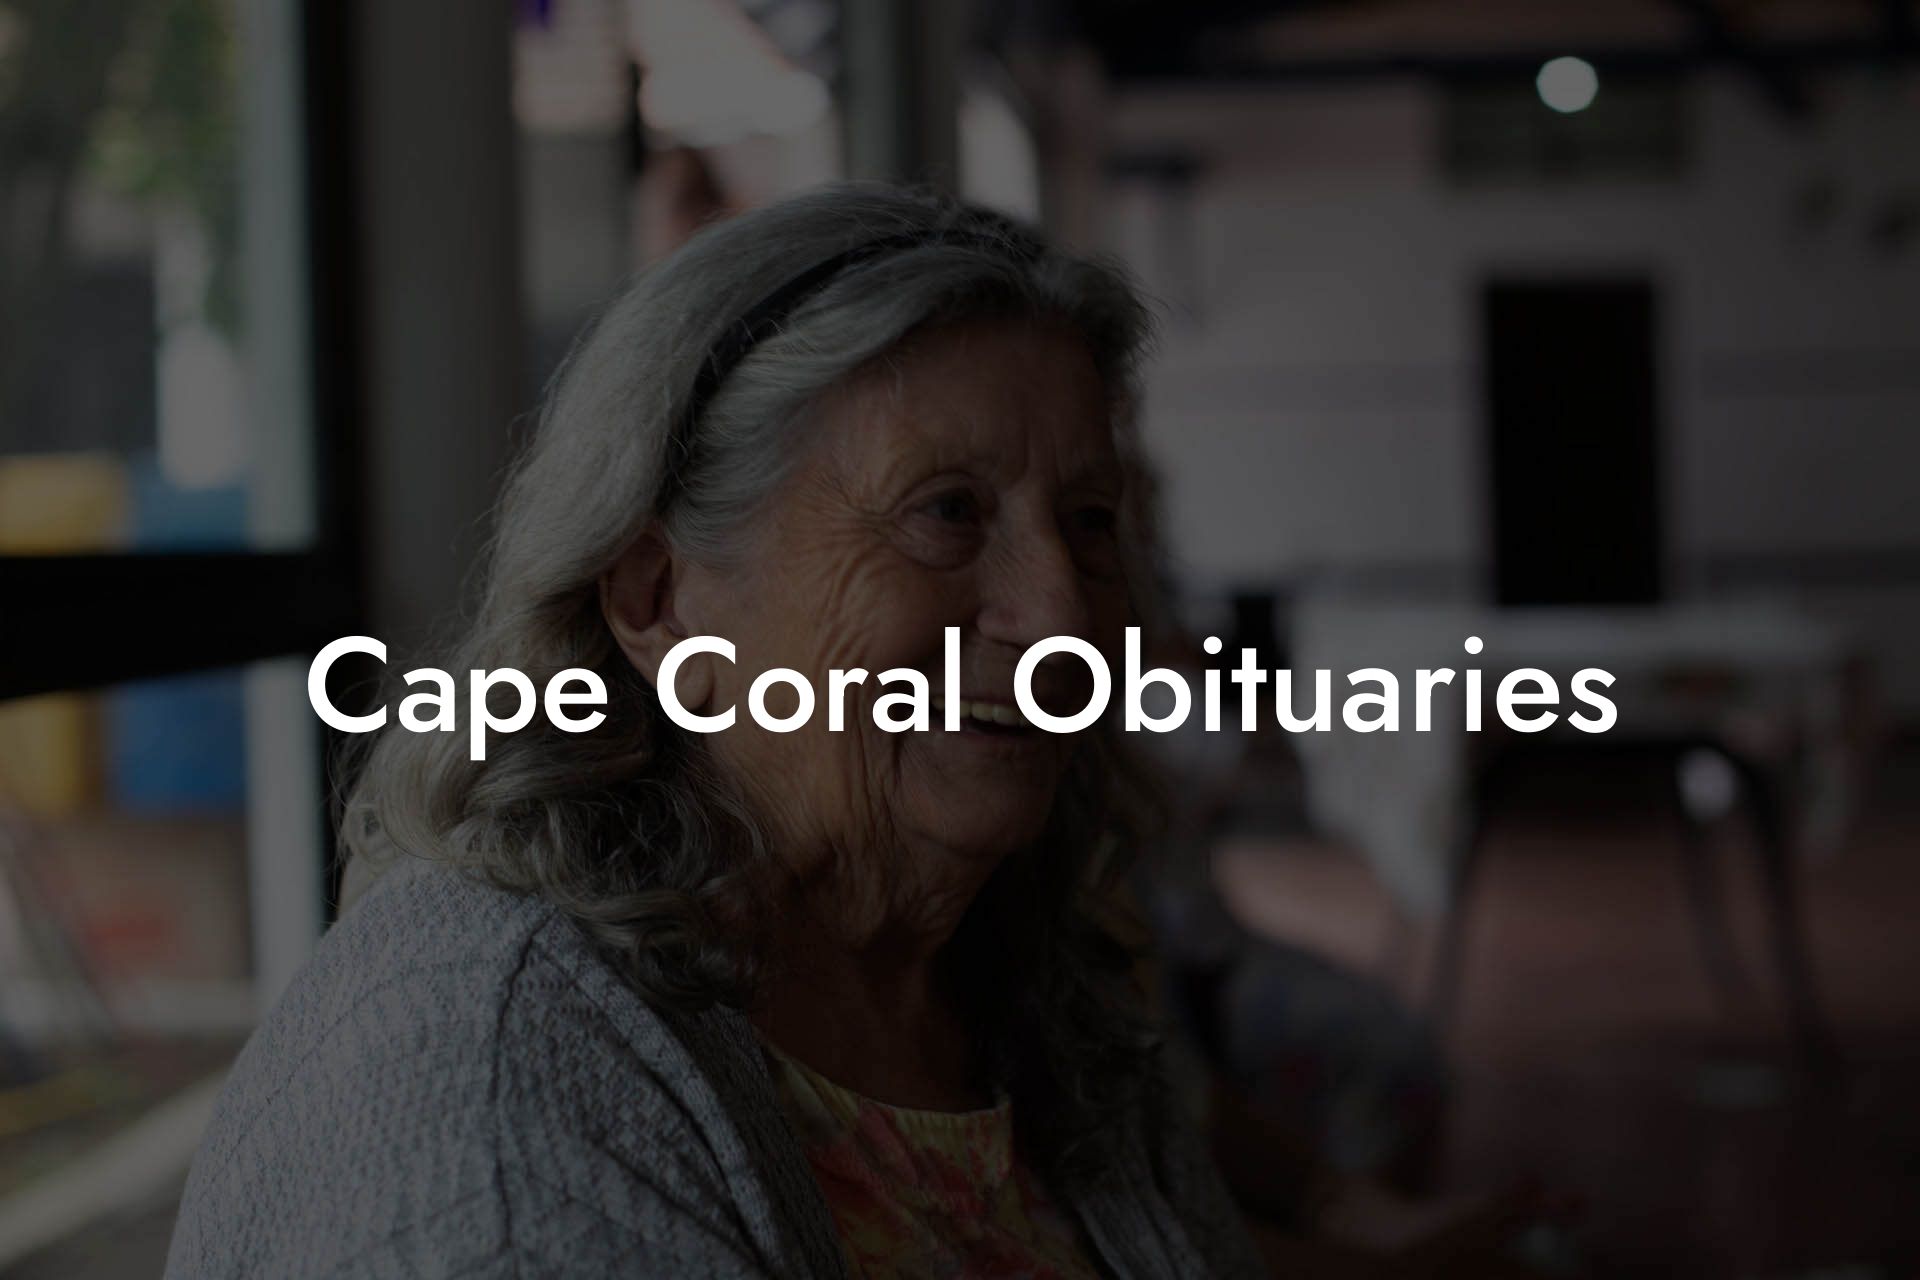 Cape Coral Obituaries